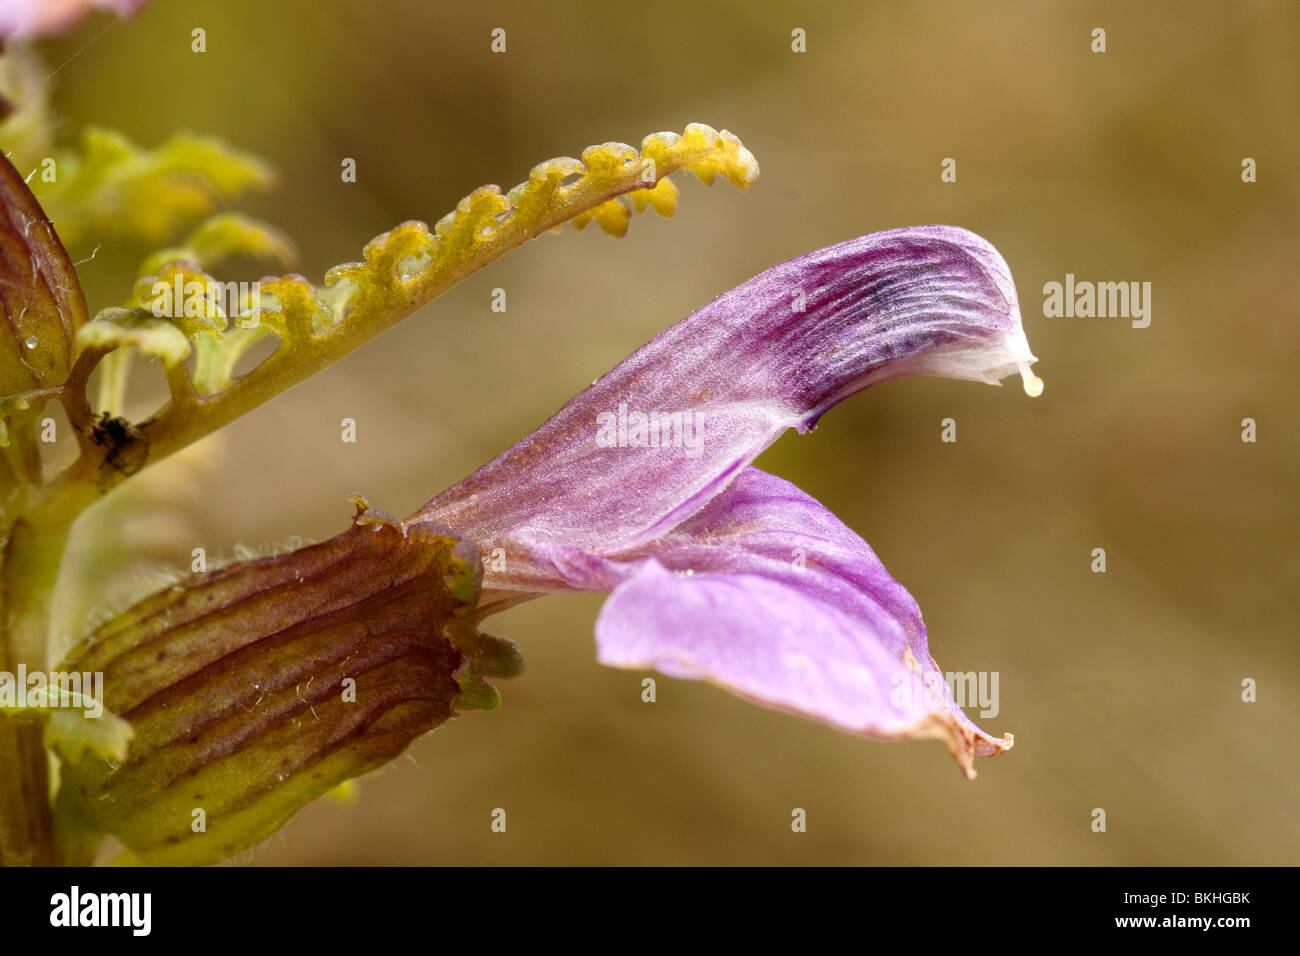 Macro opname van een bloem van Moeraskartelblad, van opzij. Stock Photo